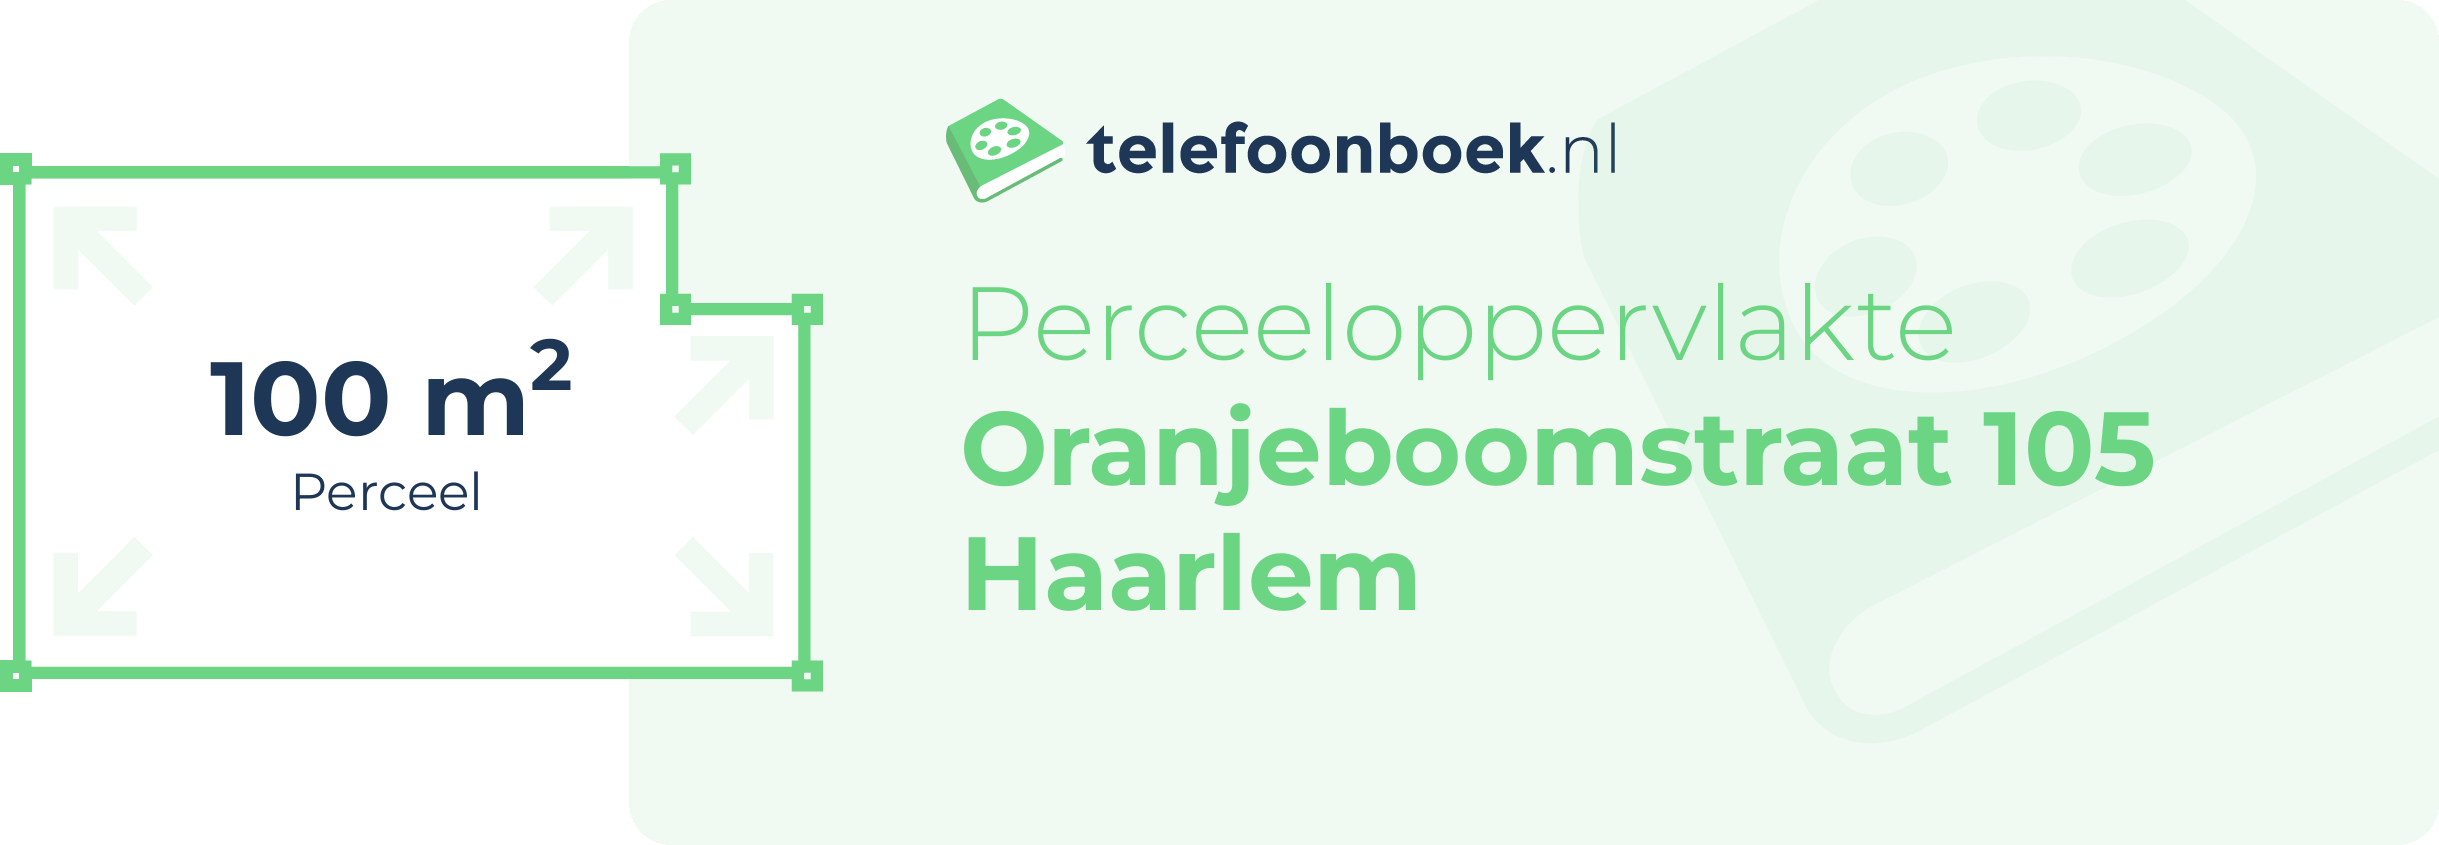 Perceeloppervlakte Oranjeboomstraat 105 Haarlem